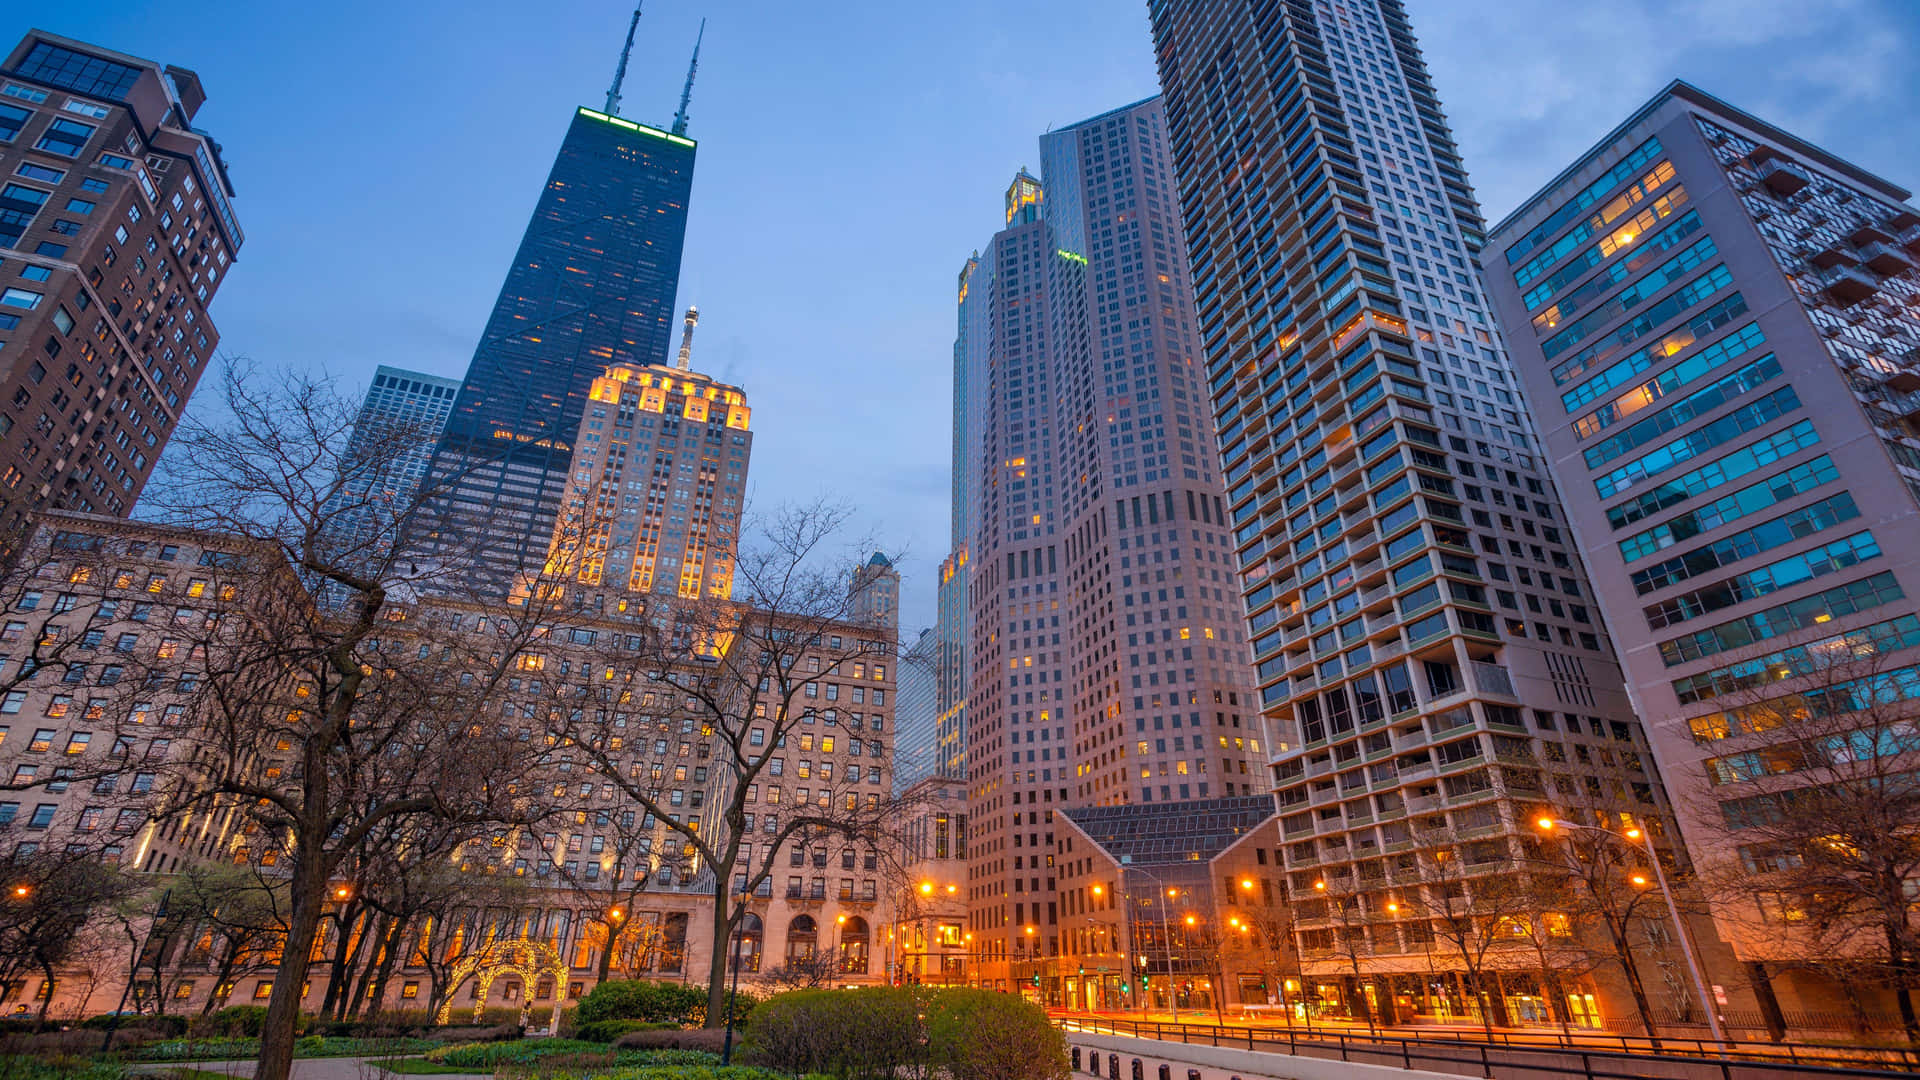 Nyd smukke udsigter over Chicago fra himlen Wallpaper